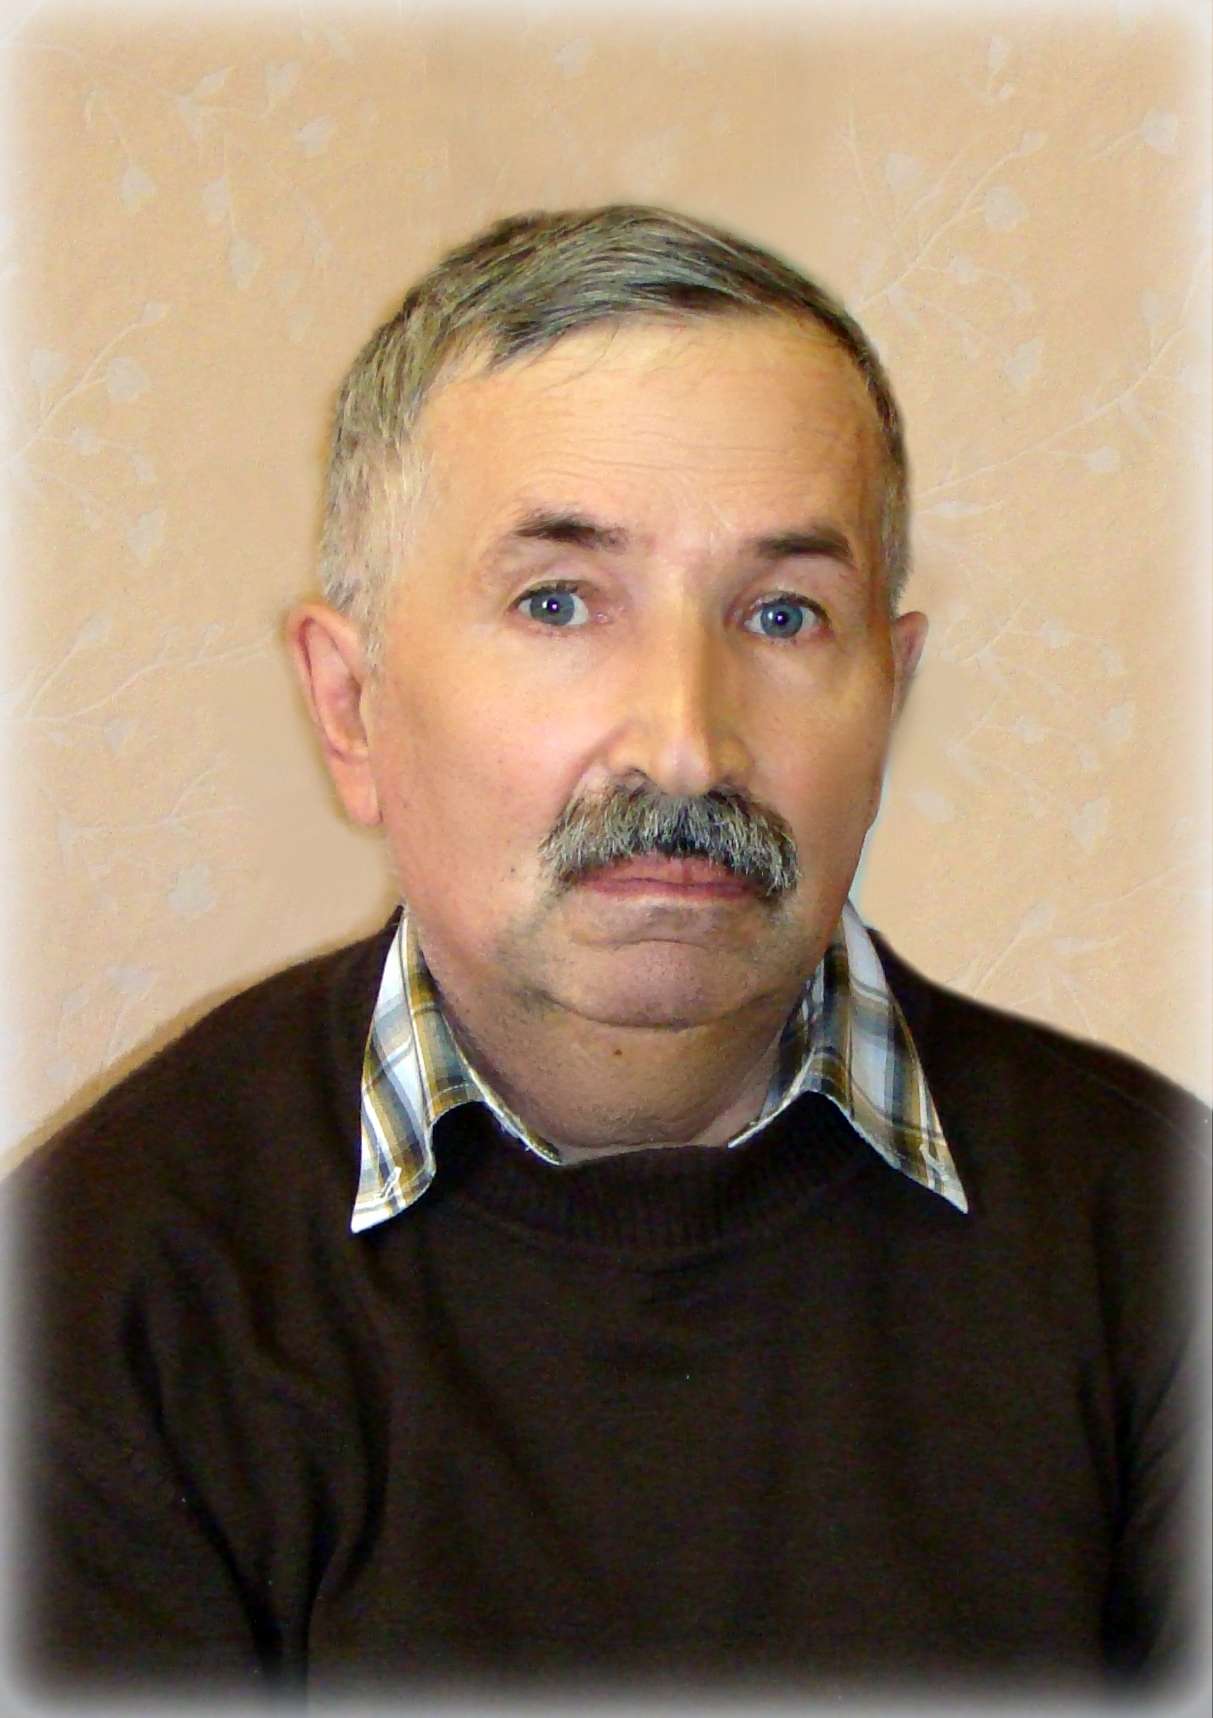 Иван Киреевский